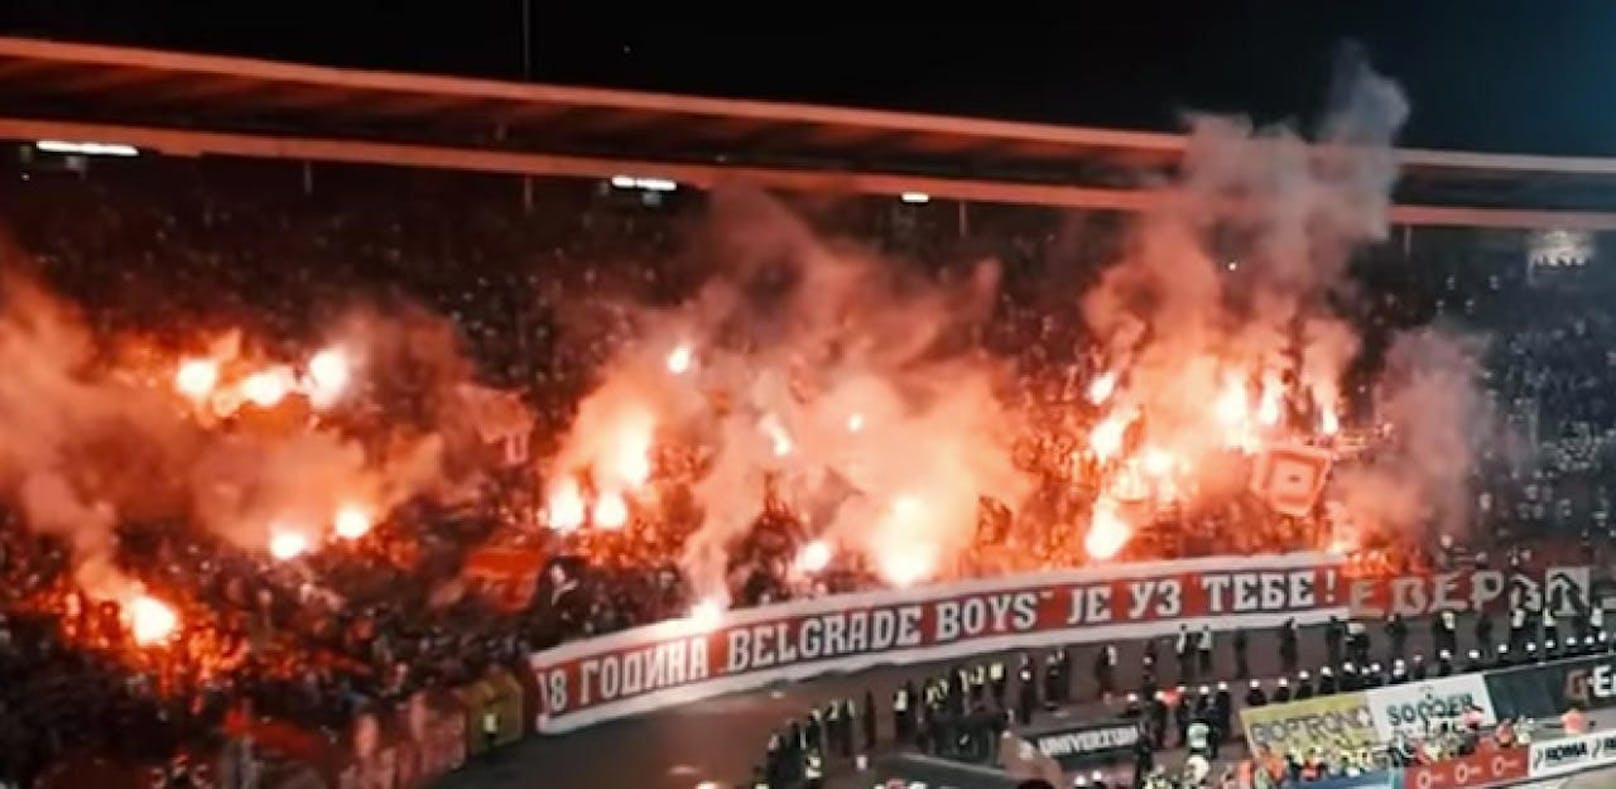 Derby brutal: Fans zünden das Stadion in Belgrad an